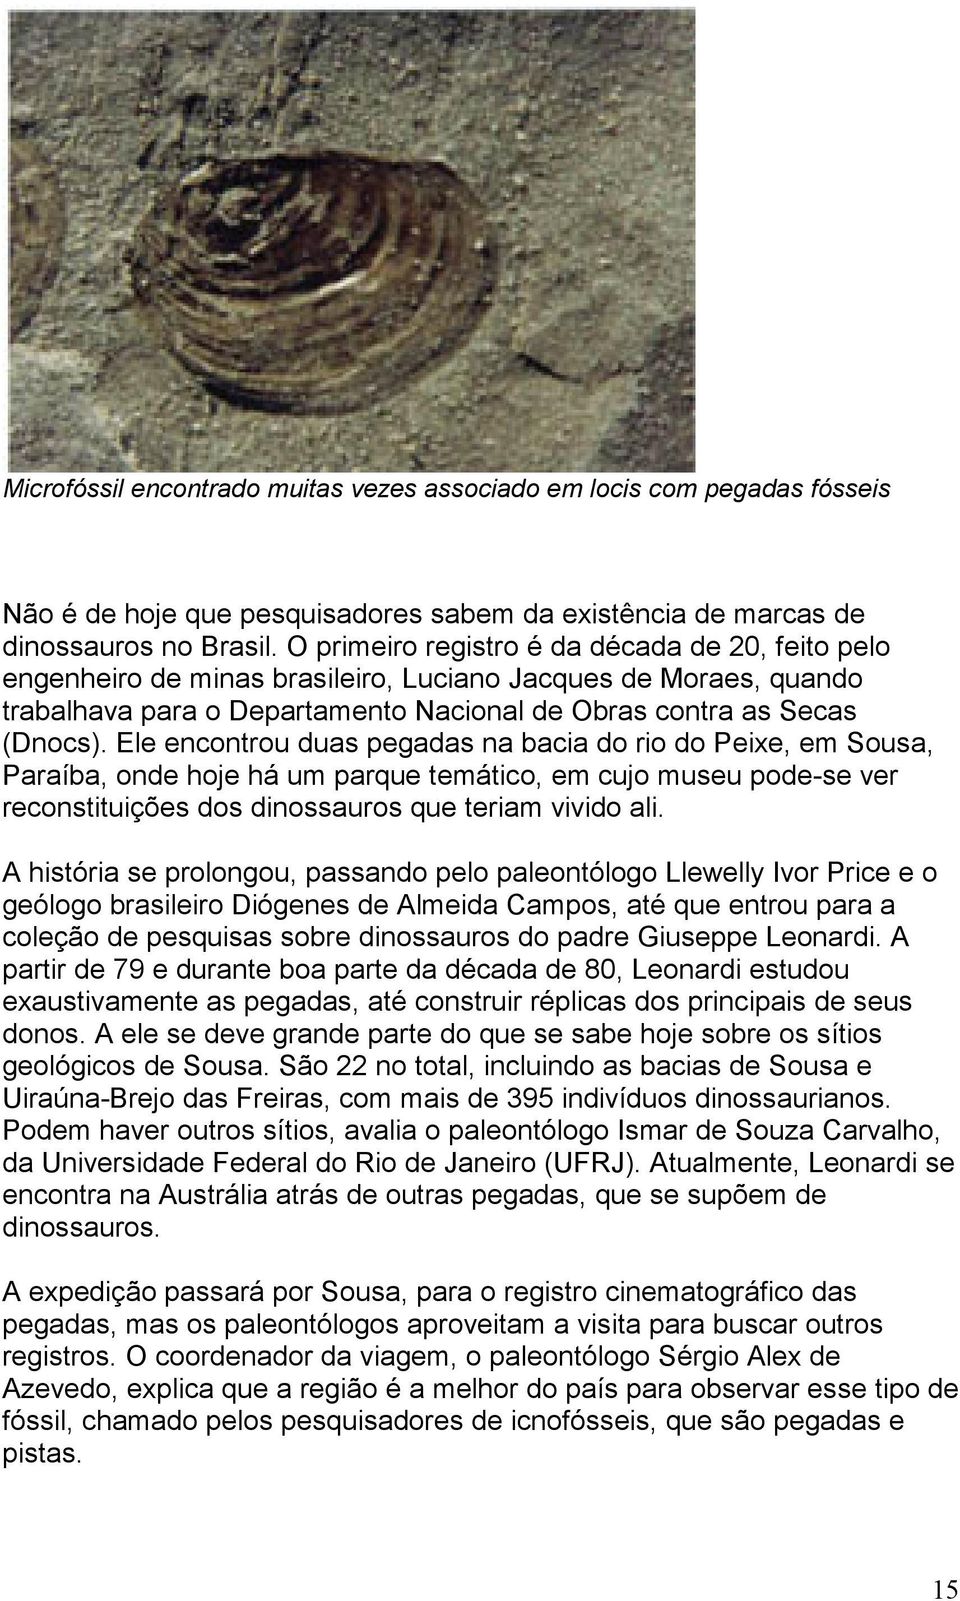 Ele encontrou duas pegadas na bacia do rio do Peixe, em Sousa, Paraíba, onde hoje há um parque temático, em cujo museu pode-se ver reconstituições dos dinossauros que teriam vivido ali.